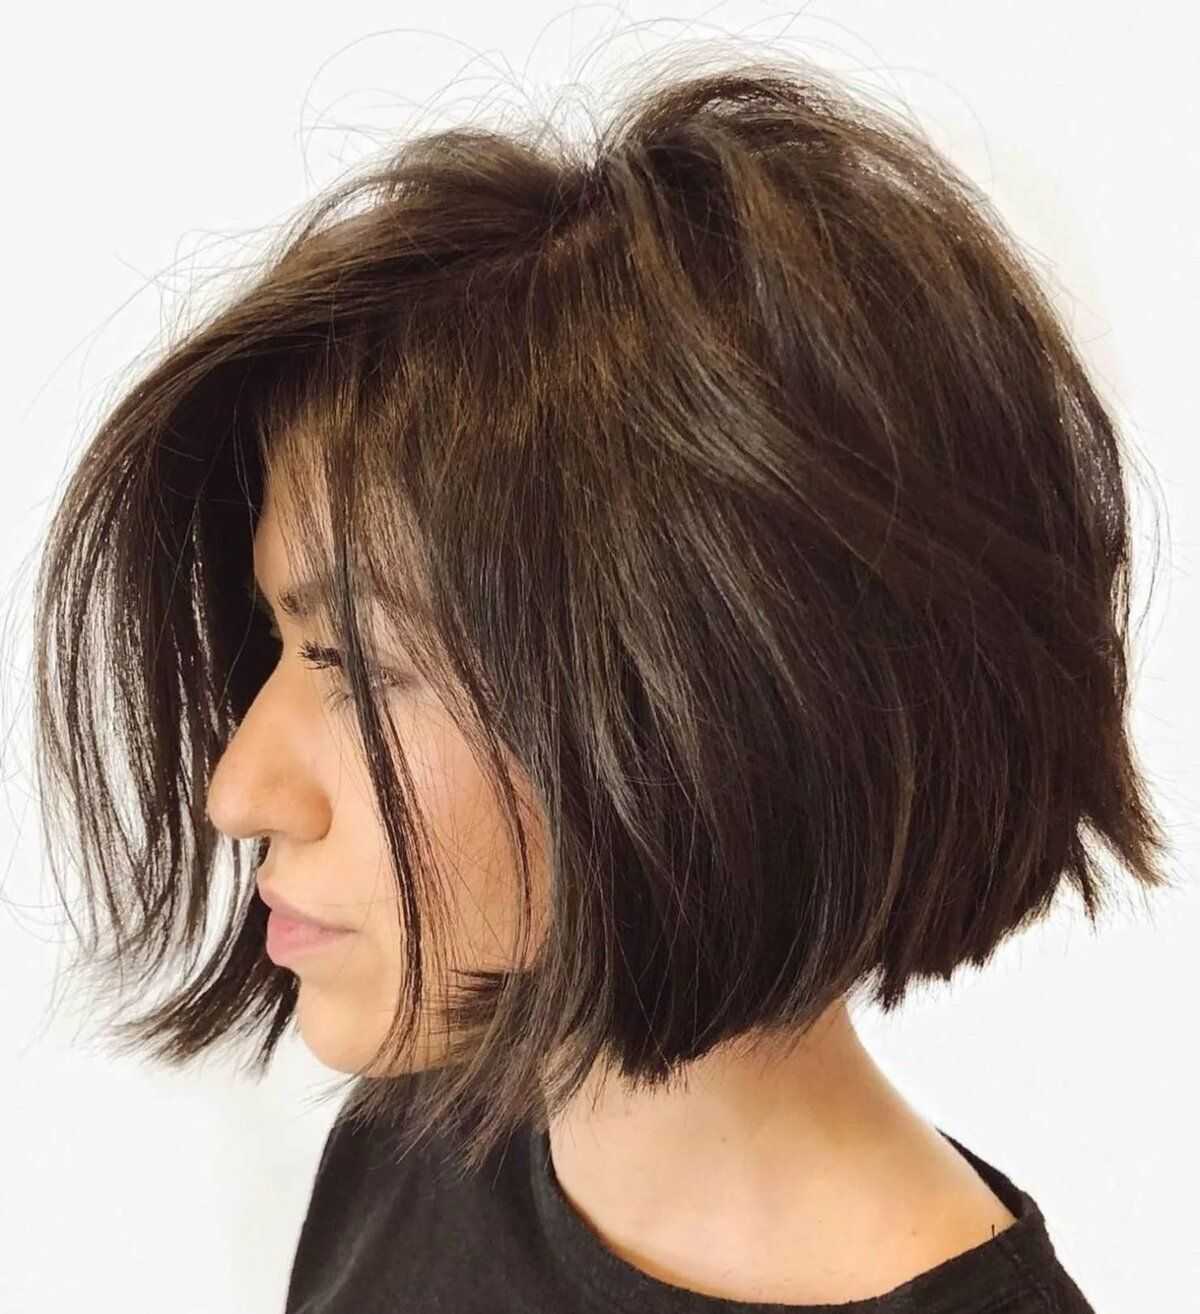 Градуированные короткие стрижки на густые волосы